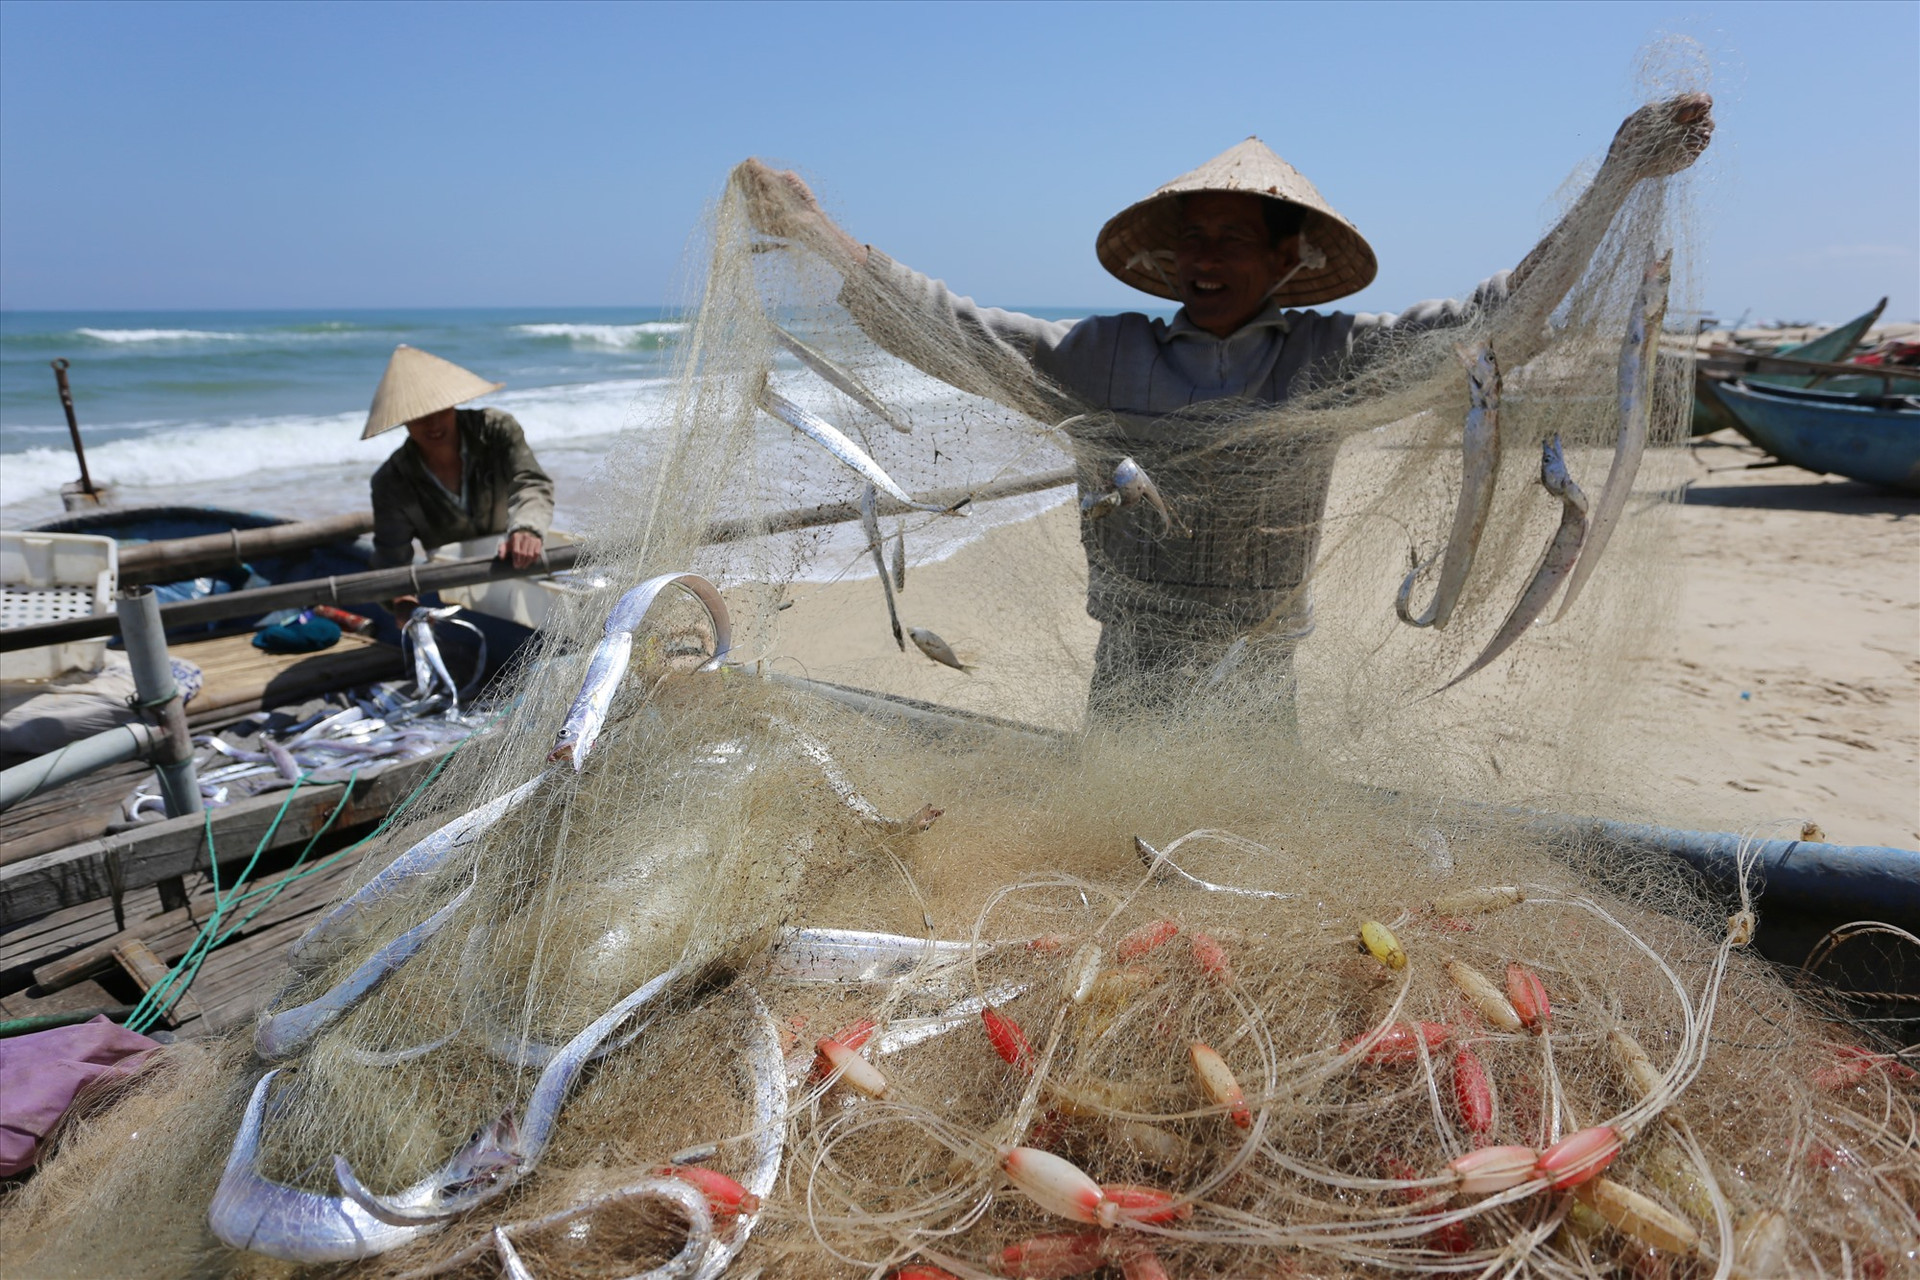 Ngư dân Nguyễn Văn Thính (66 tuổi, thôn Tỉnh Thủy) cùng con trai gỡ mẻ lưới gần 100kg cá hố